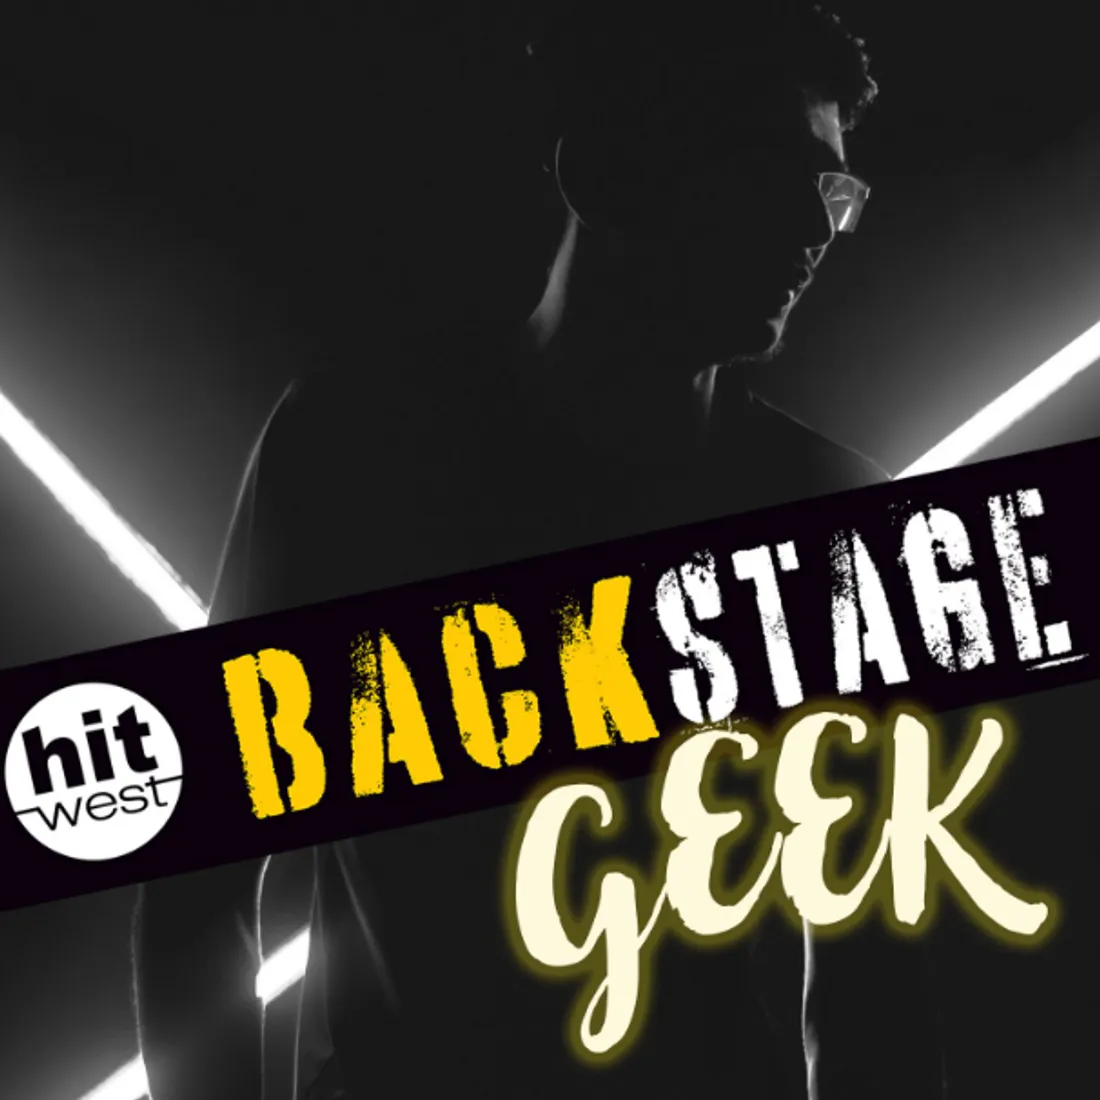 backstage geek